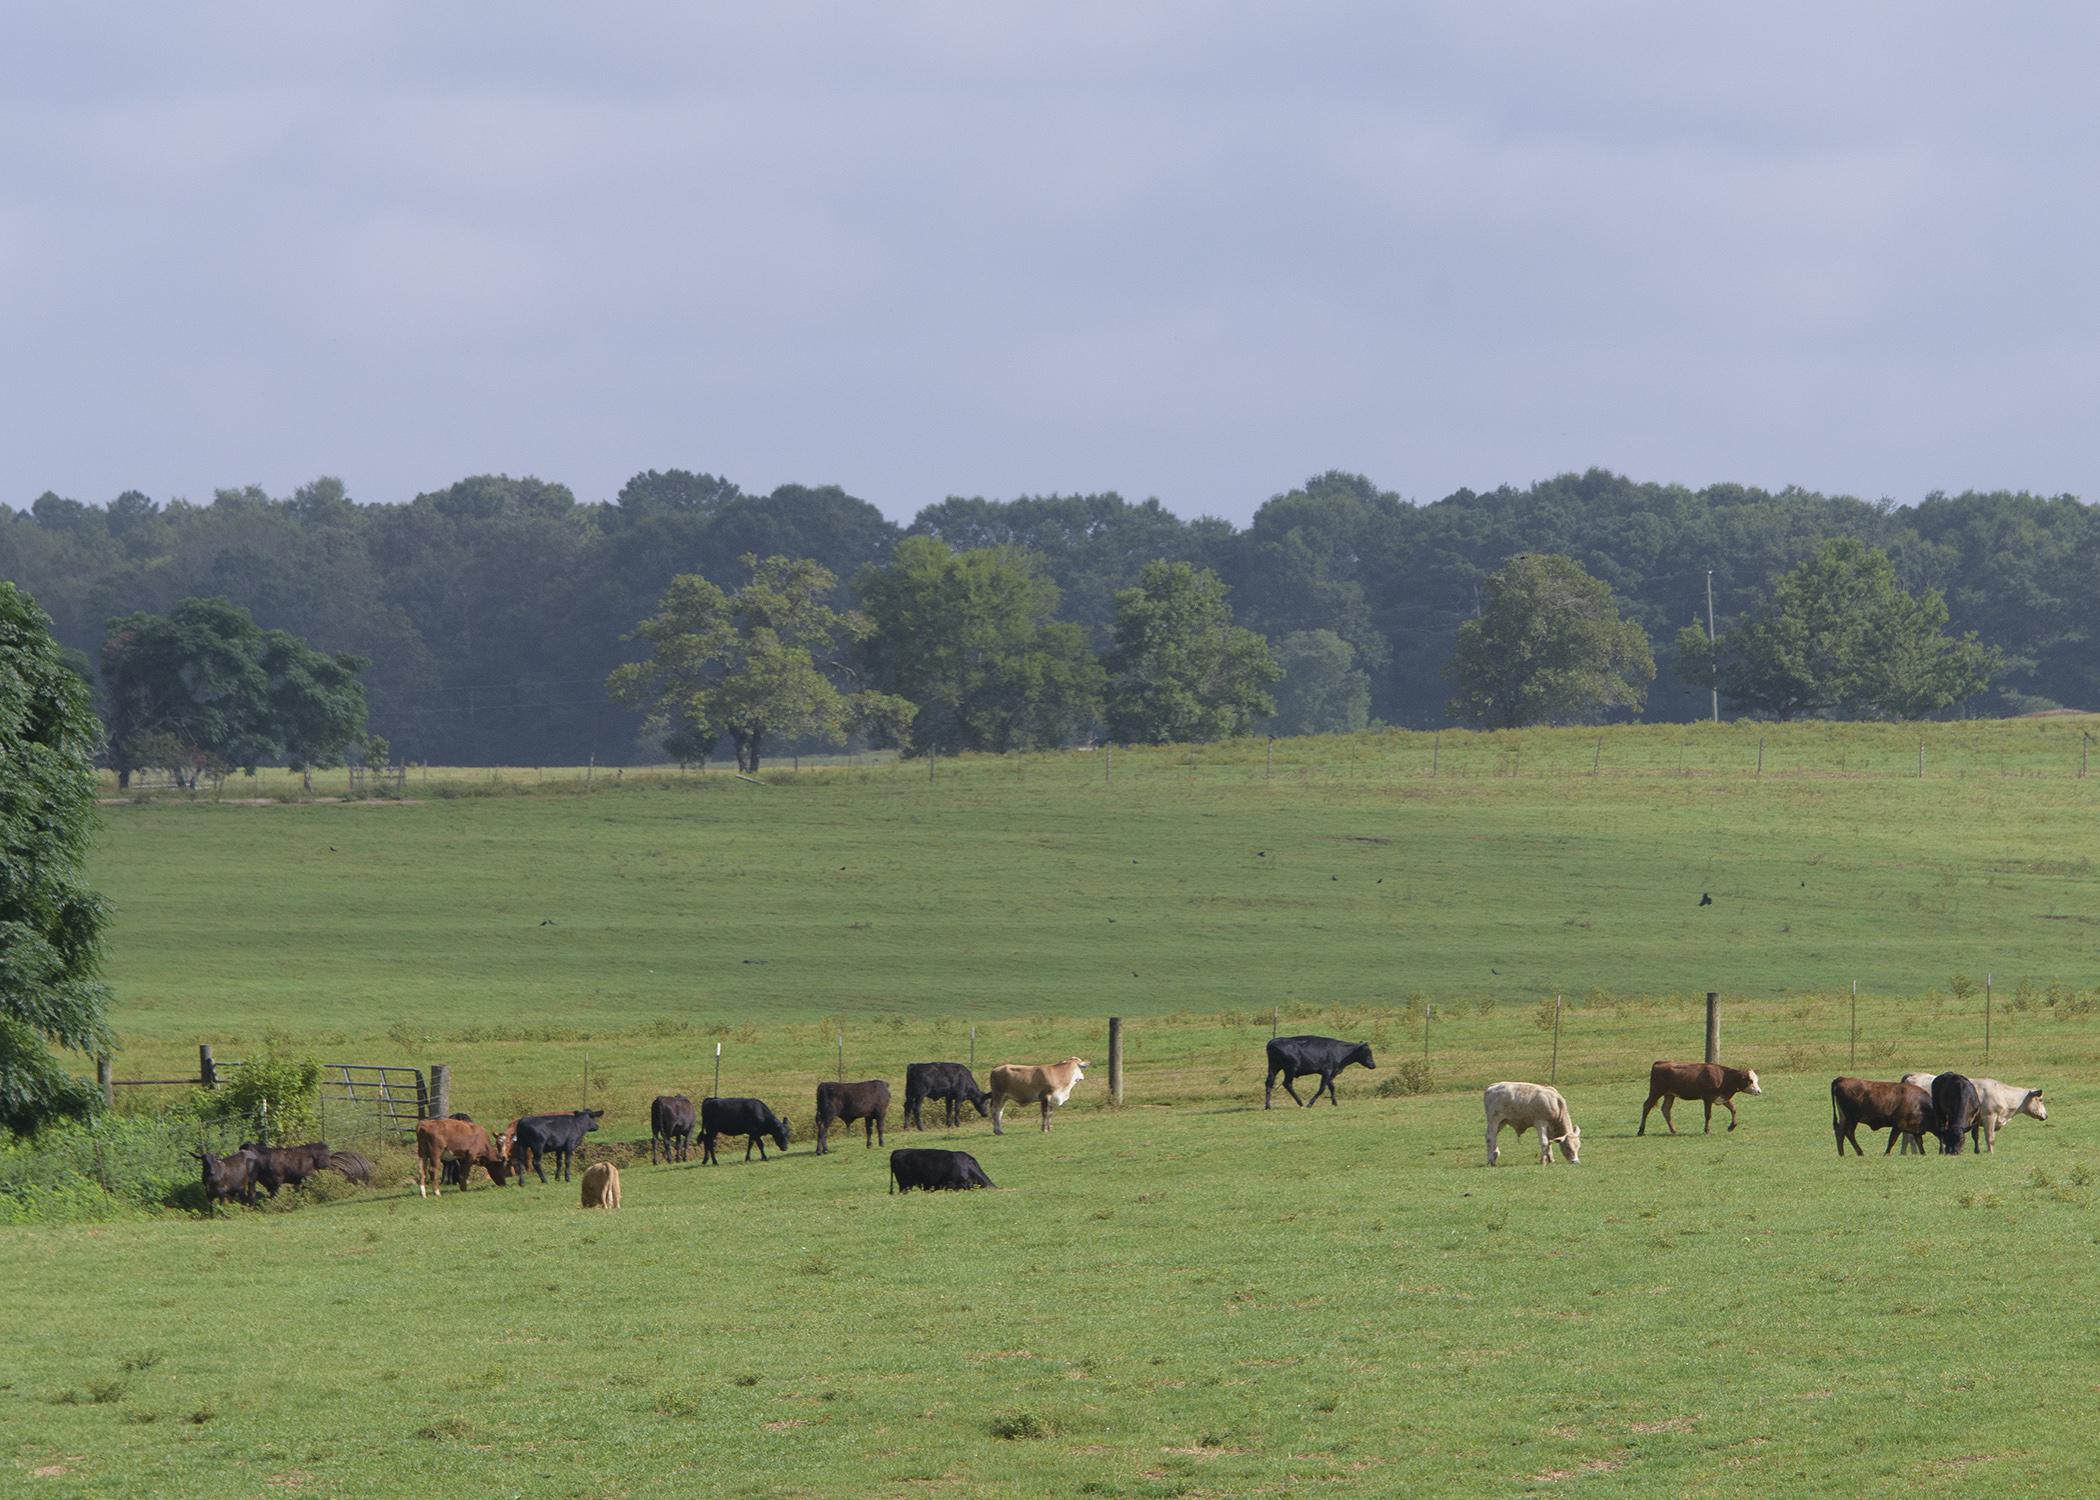 Cows graze in a field.